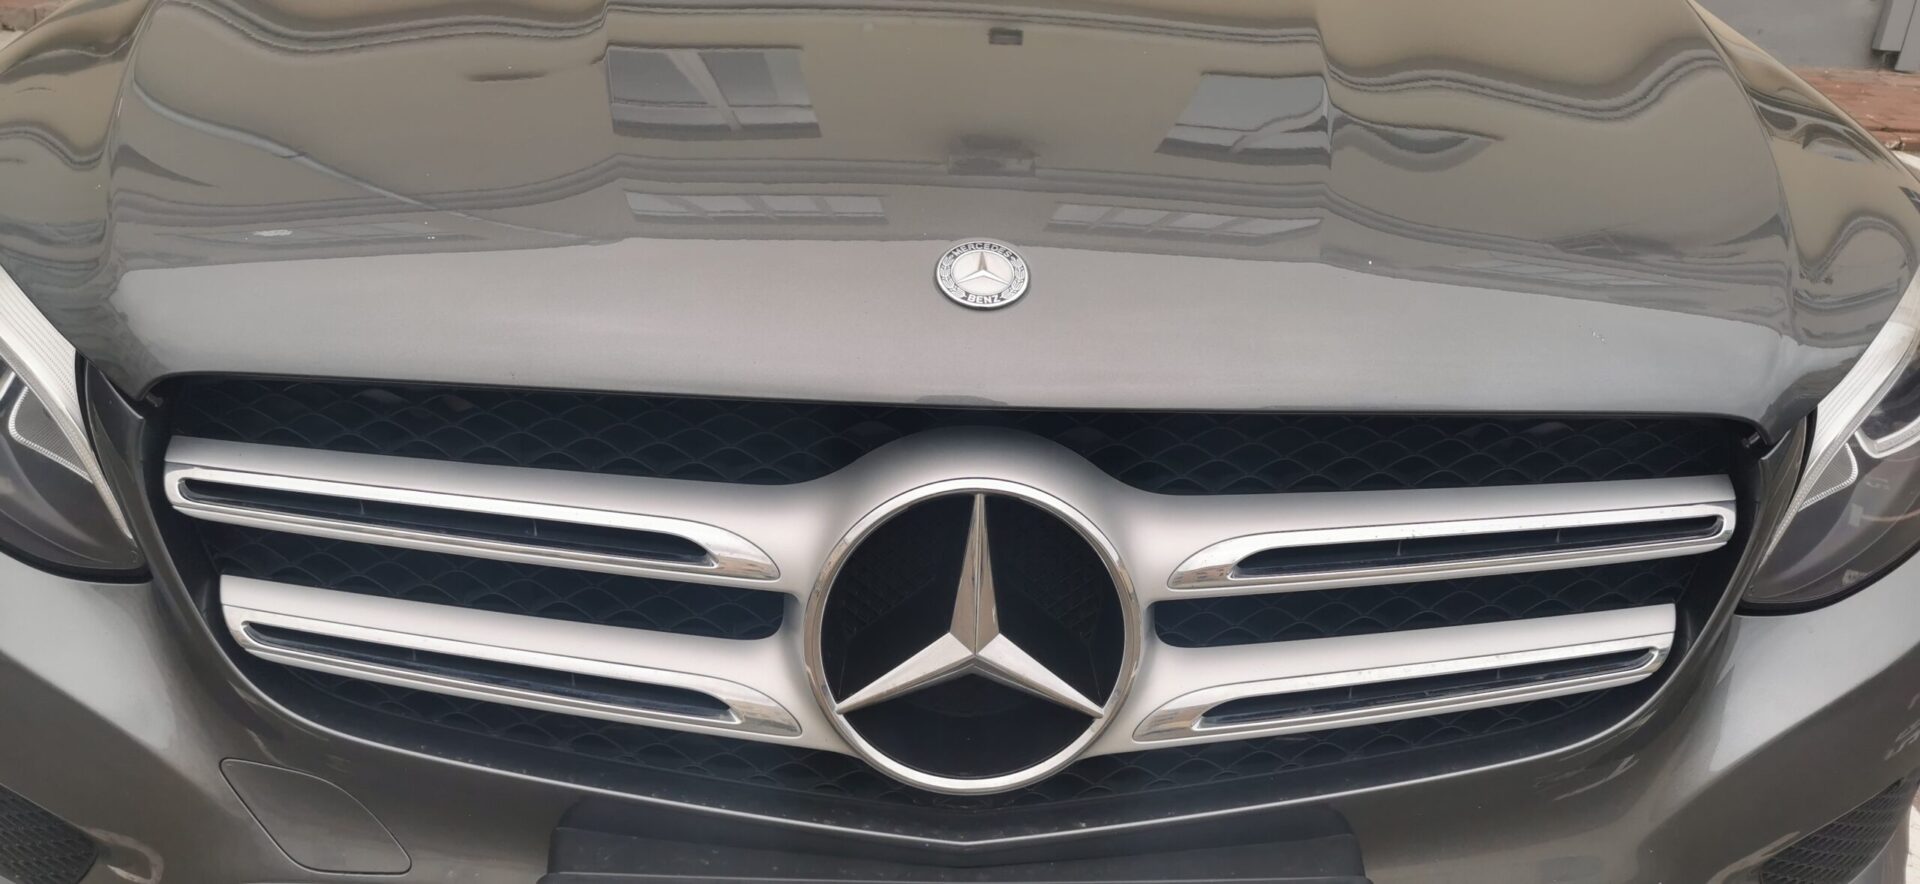 Mercedes-Benz отзывает в Китае больше 120 тыс. автомобилей из-за проблем с тормозами